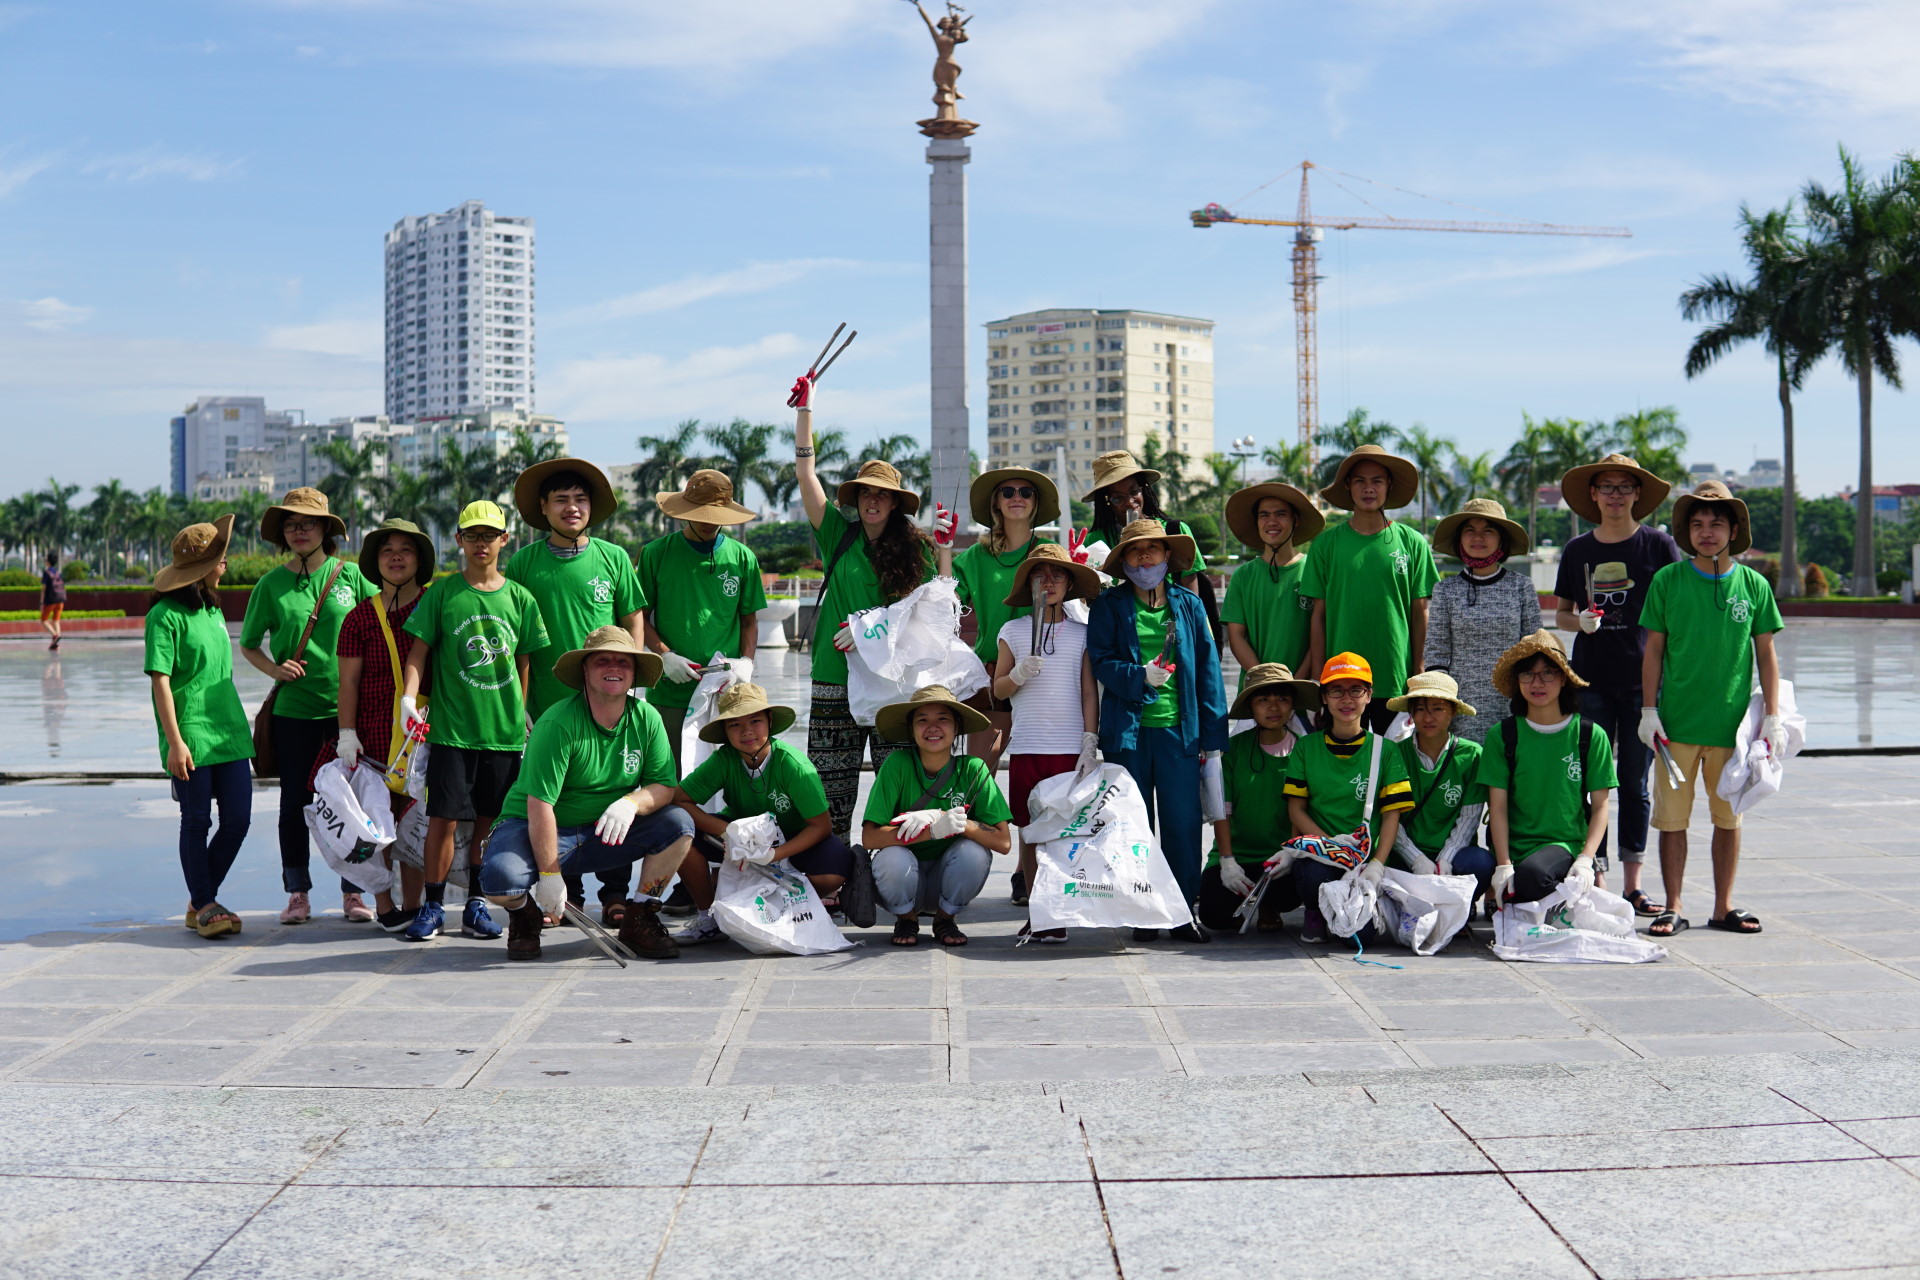 Fiel a su orientación ambientalista, “Keep Hanoi Clean” espera construir un centro ecológico, donde se utiliza materiales reciclados en lugar de los habituales